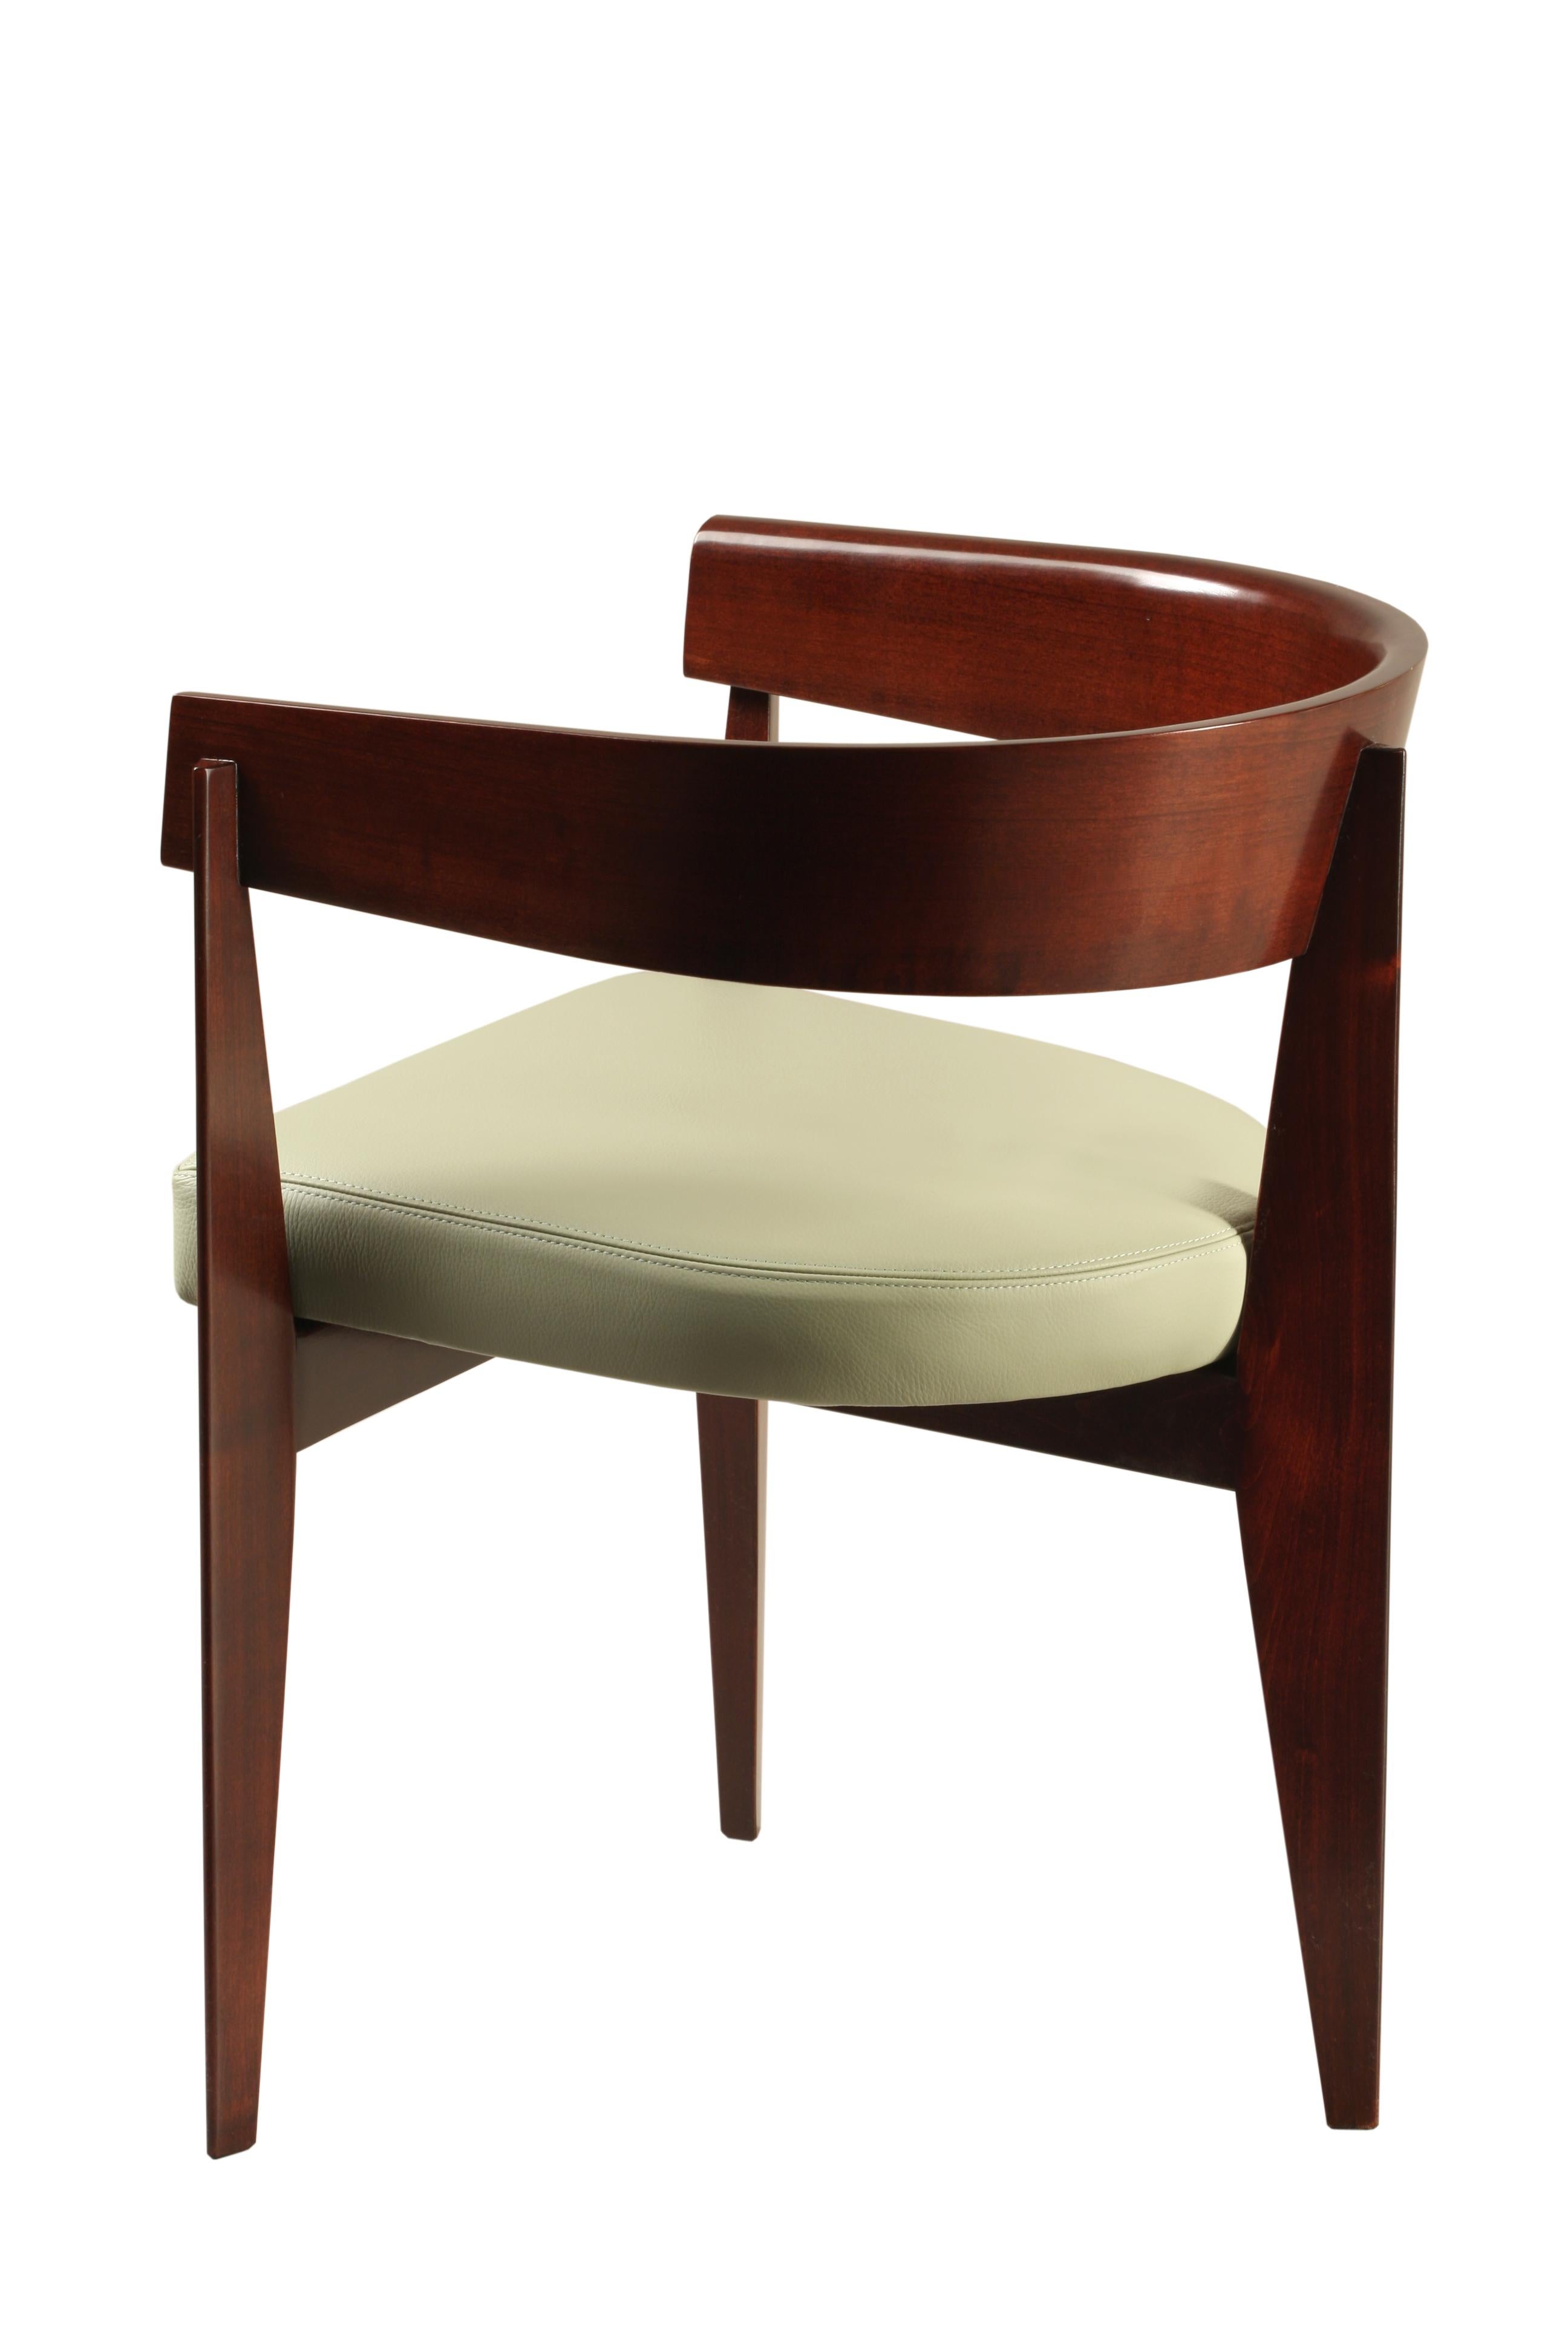 Ronson ist ein gepolsterter Sessel im Stil der Jahrhundertmitte, der aus massivem Eschenholz gefertigt ist. Die einteilige, geschwungene Rückenlehne wird von drei Beinen getragen. 
Gepolstertes, mit Leder oder Stoff bezogenes Kissen.
Anpassbar in